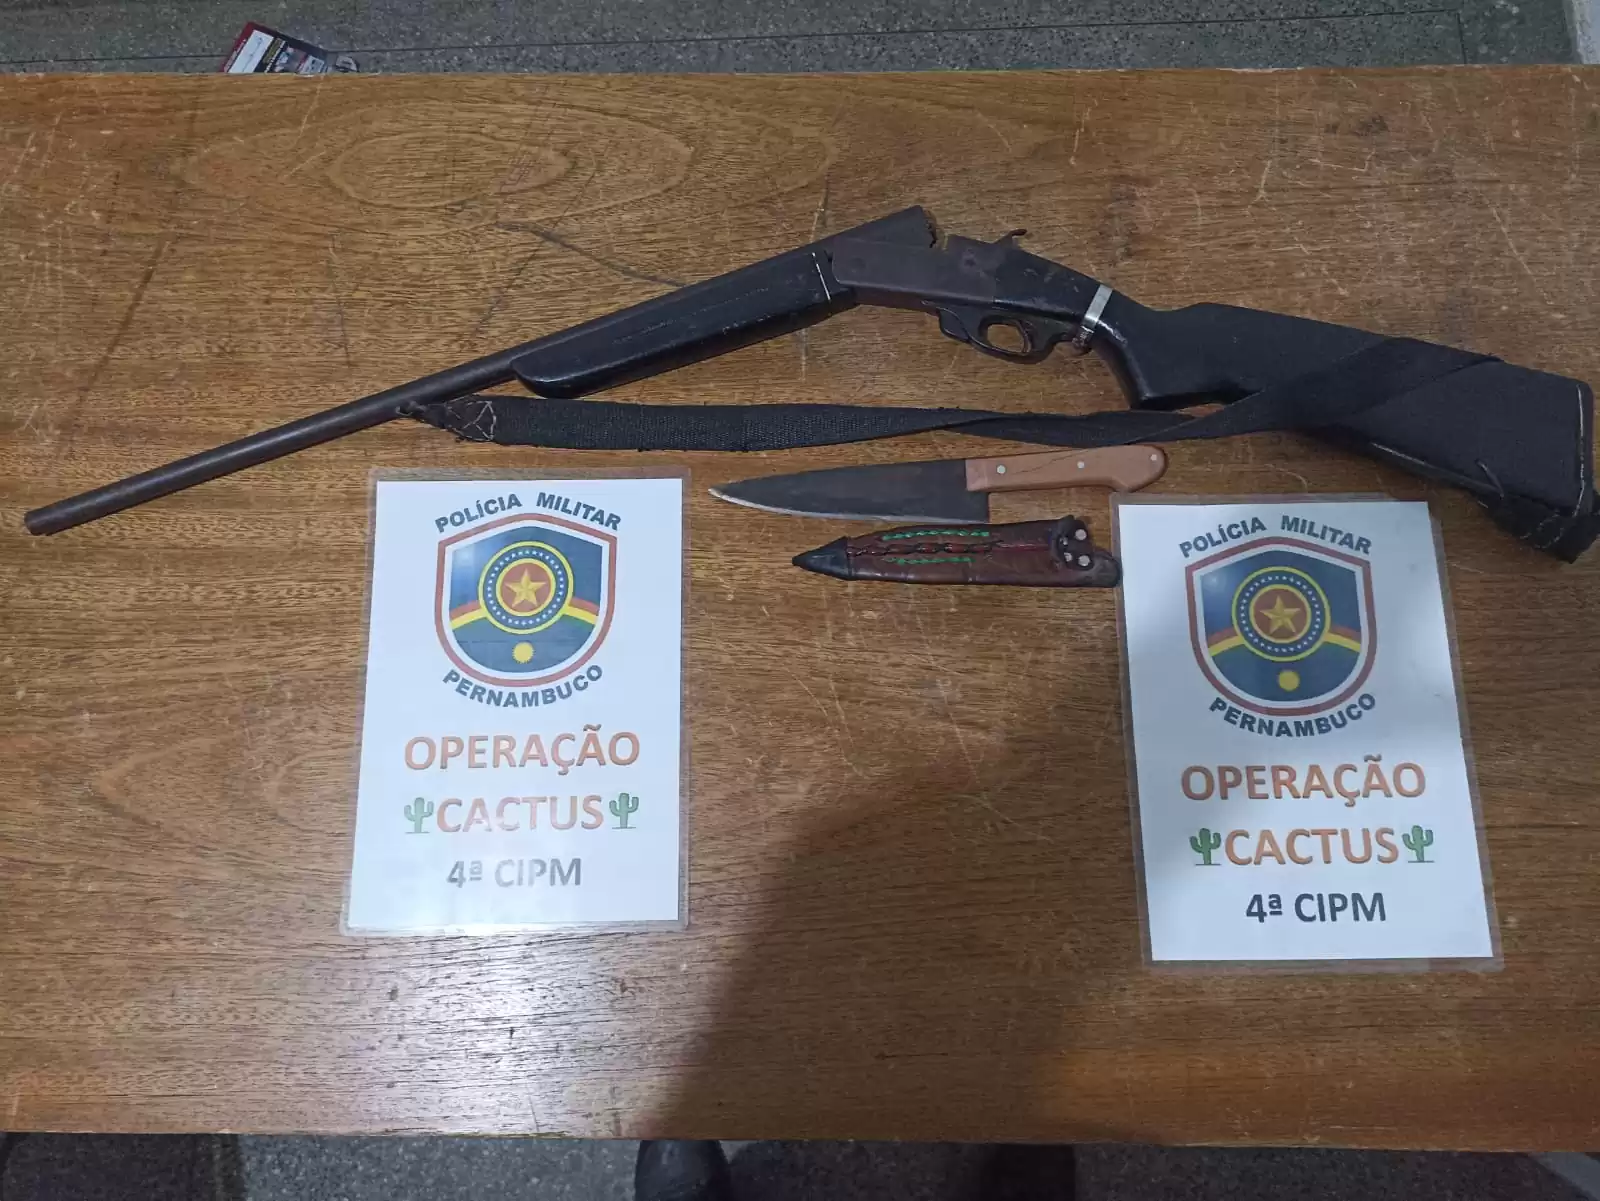 INAJÁ: Policiais da 4ª CIPM apreendem arma de fogo na operação “CACTUS”